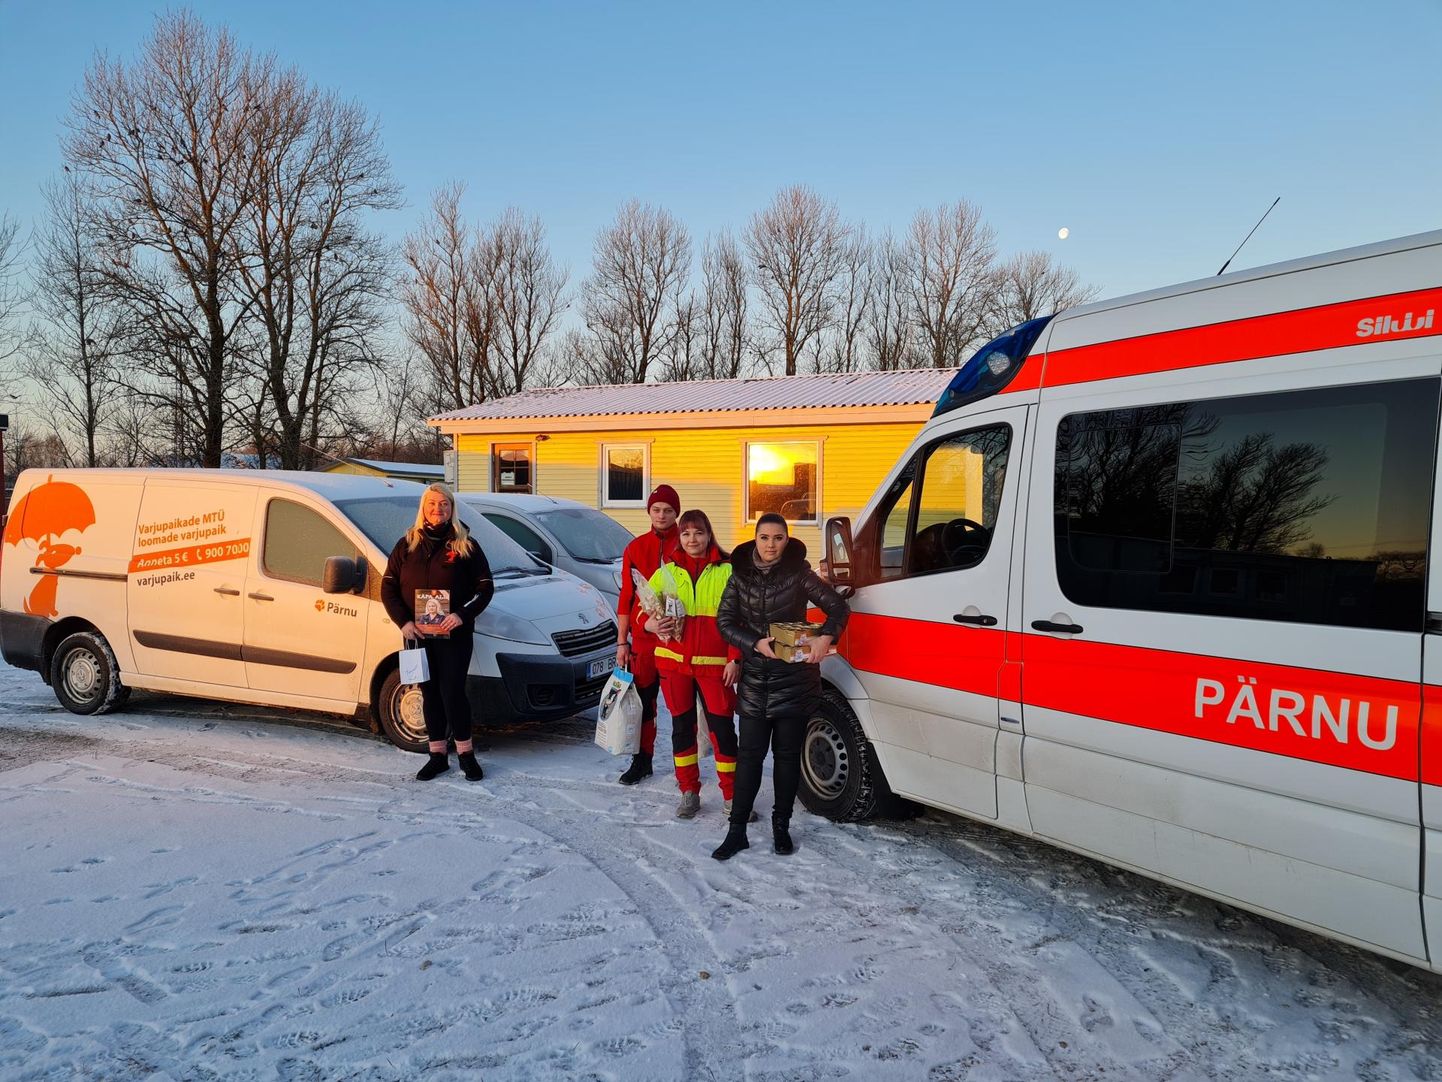 Kiirabitöötajad tegid annetuse Pärnu loomade varjupaigale.